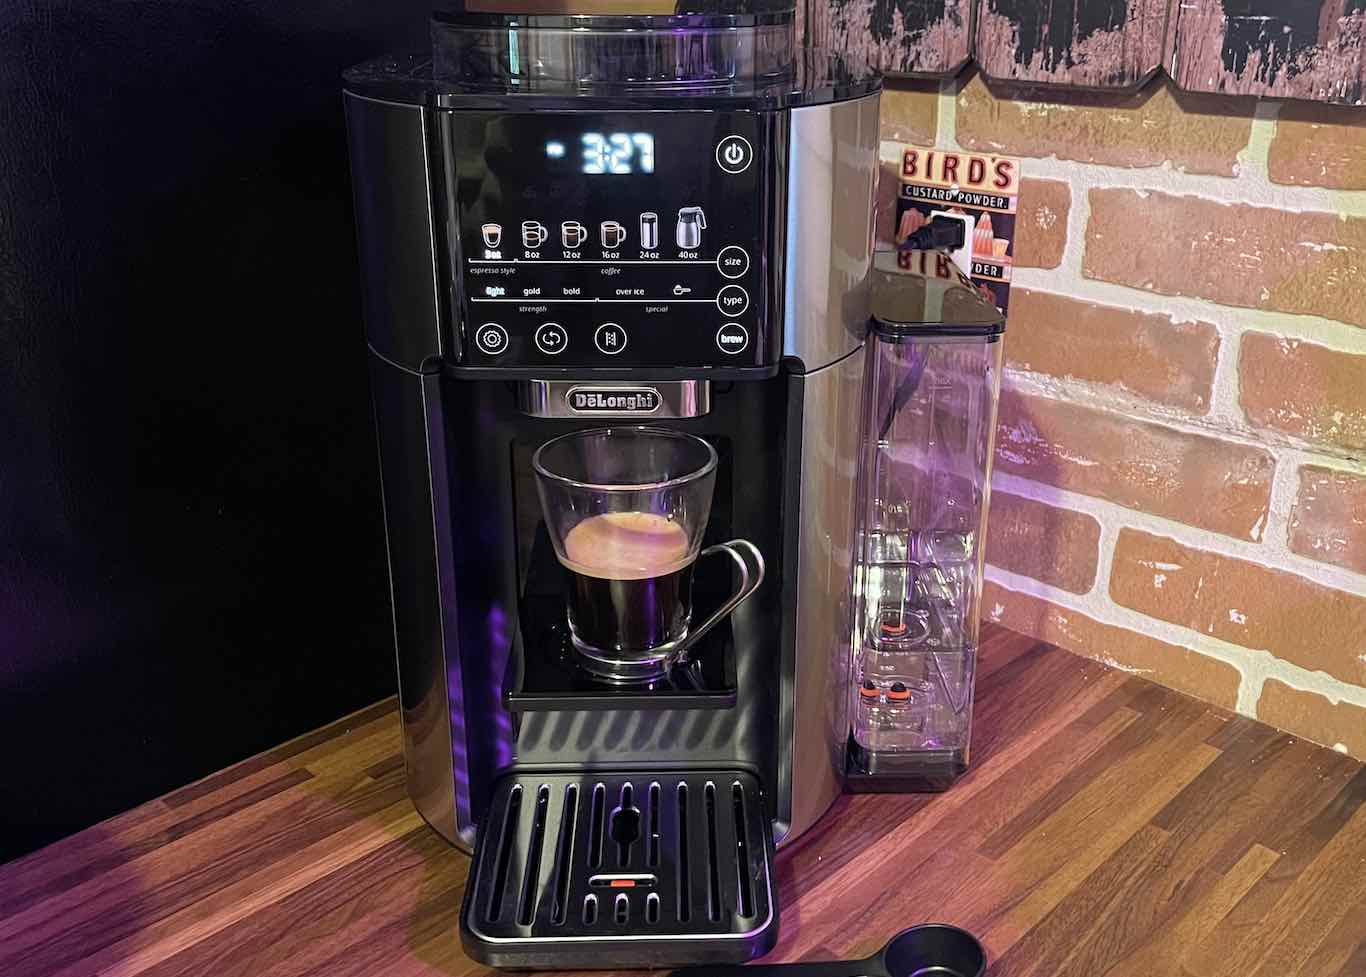 Delonghi truebrew automatic coffee maker with espresso option